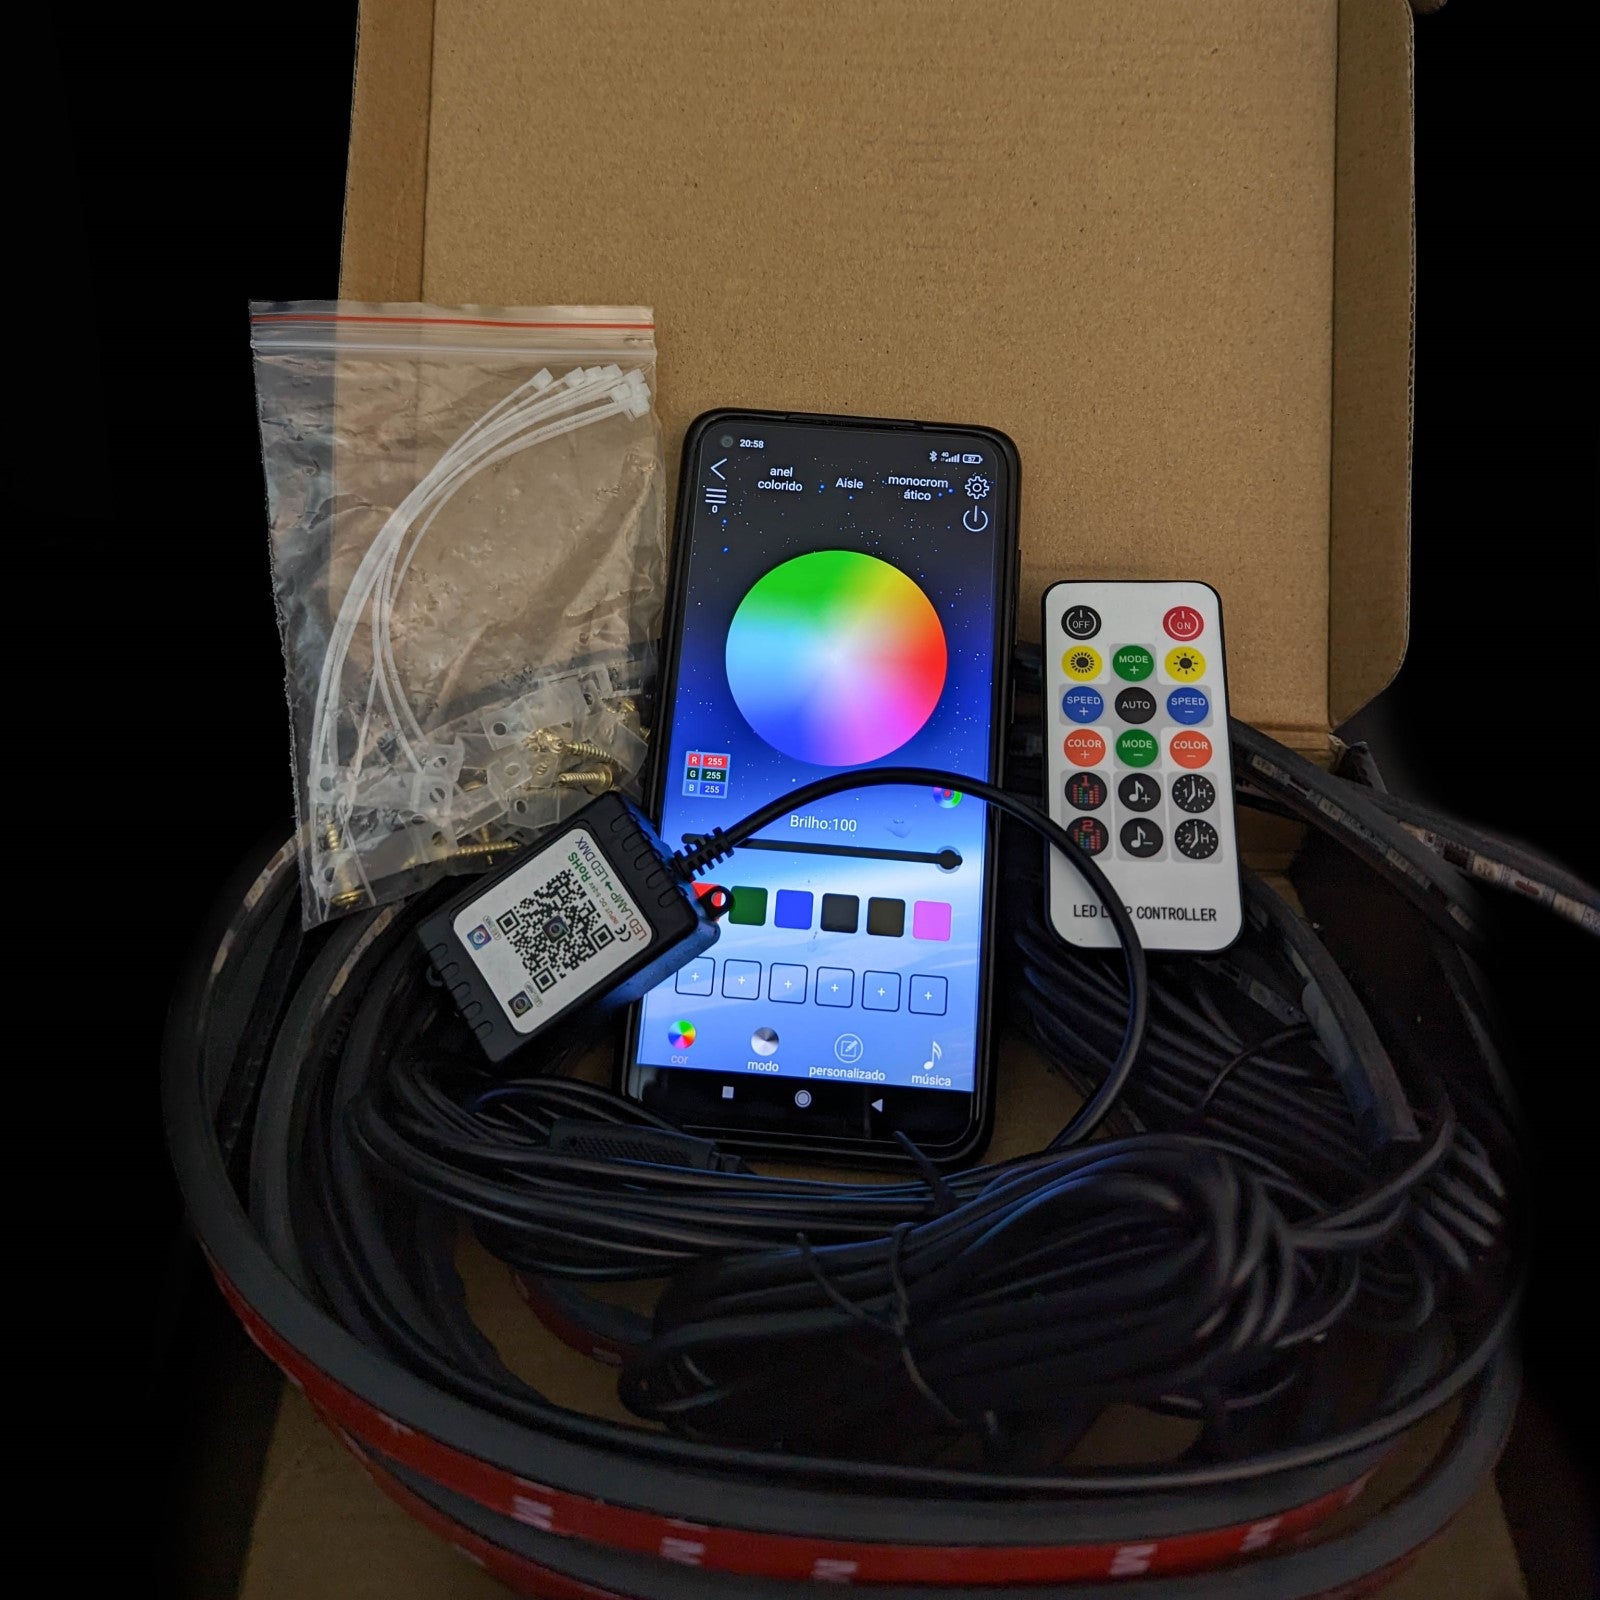 Underglow Rainbow arco-íris caixa com comando, fitas led e smartphone com app de controlo